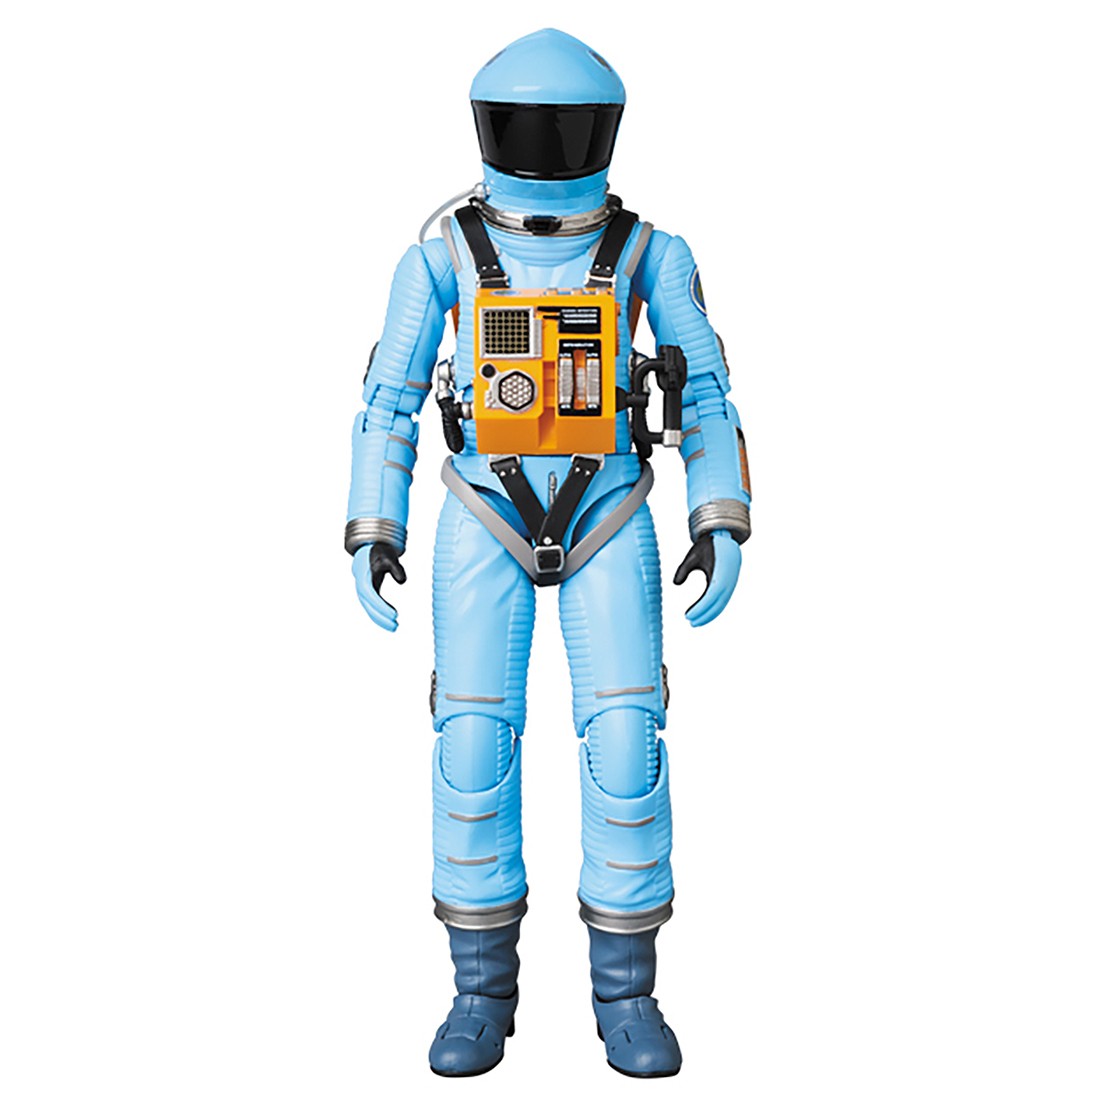 Medicom MAFEX 2001 A Space Odyssey Space Suit Light Blue Ver. Figure (blue)